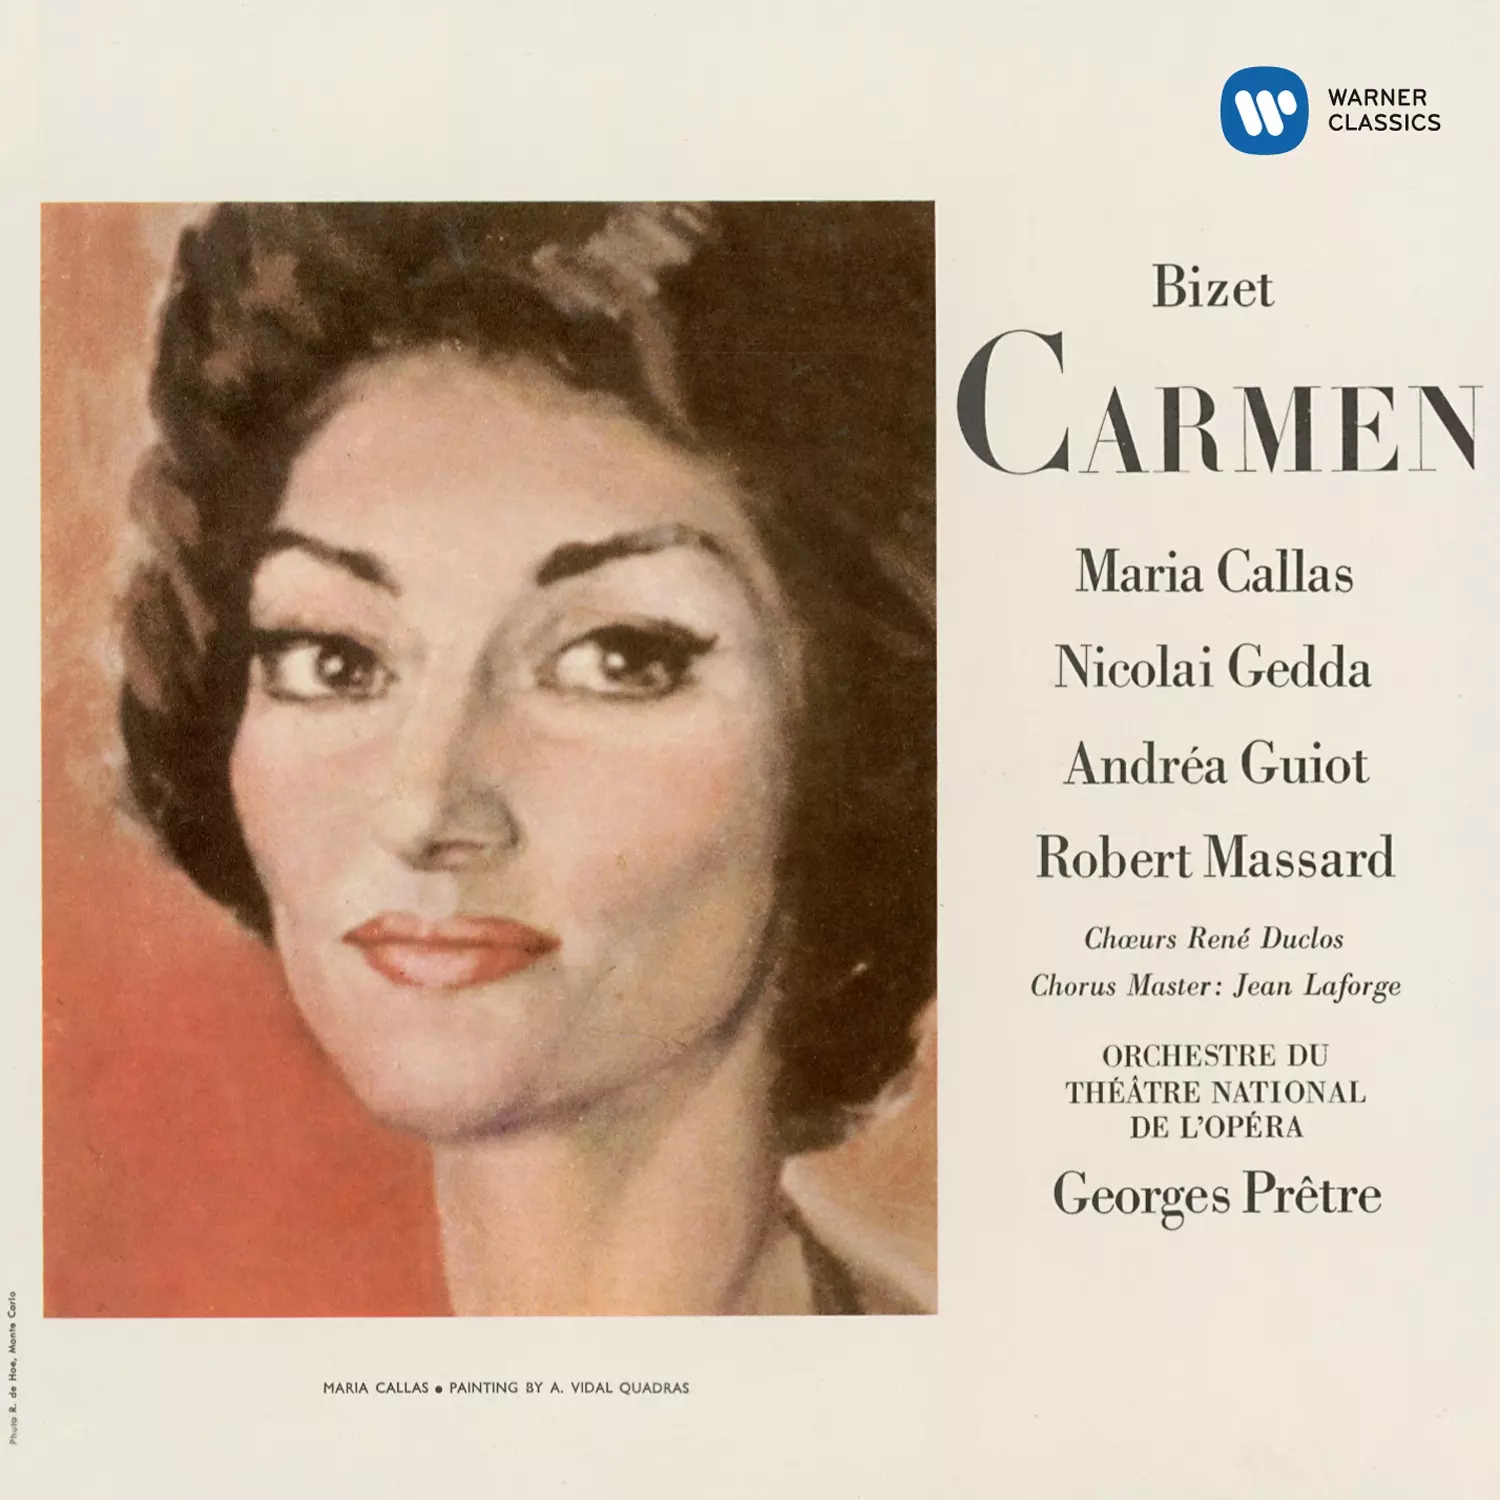 Maria Callas 2014 - Bizet: Carmen [1964]